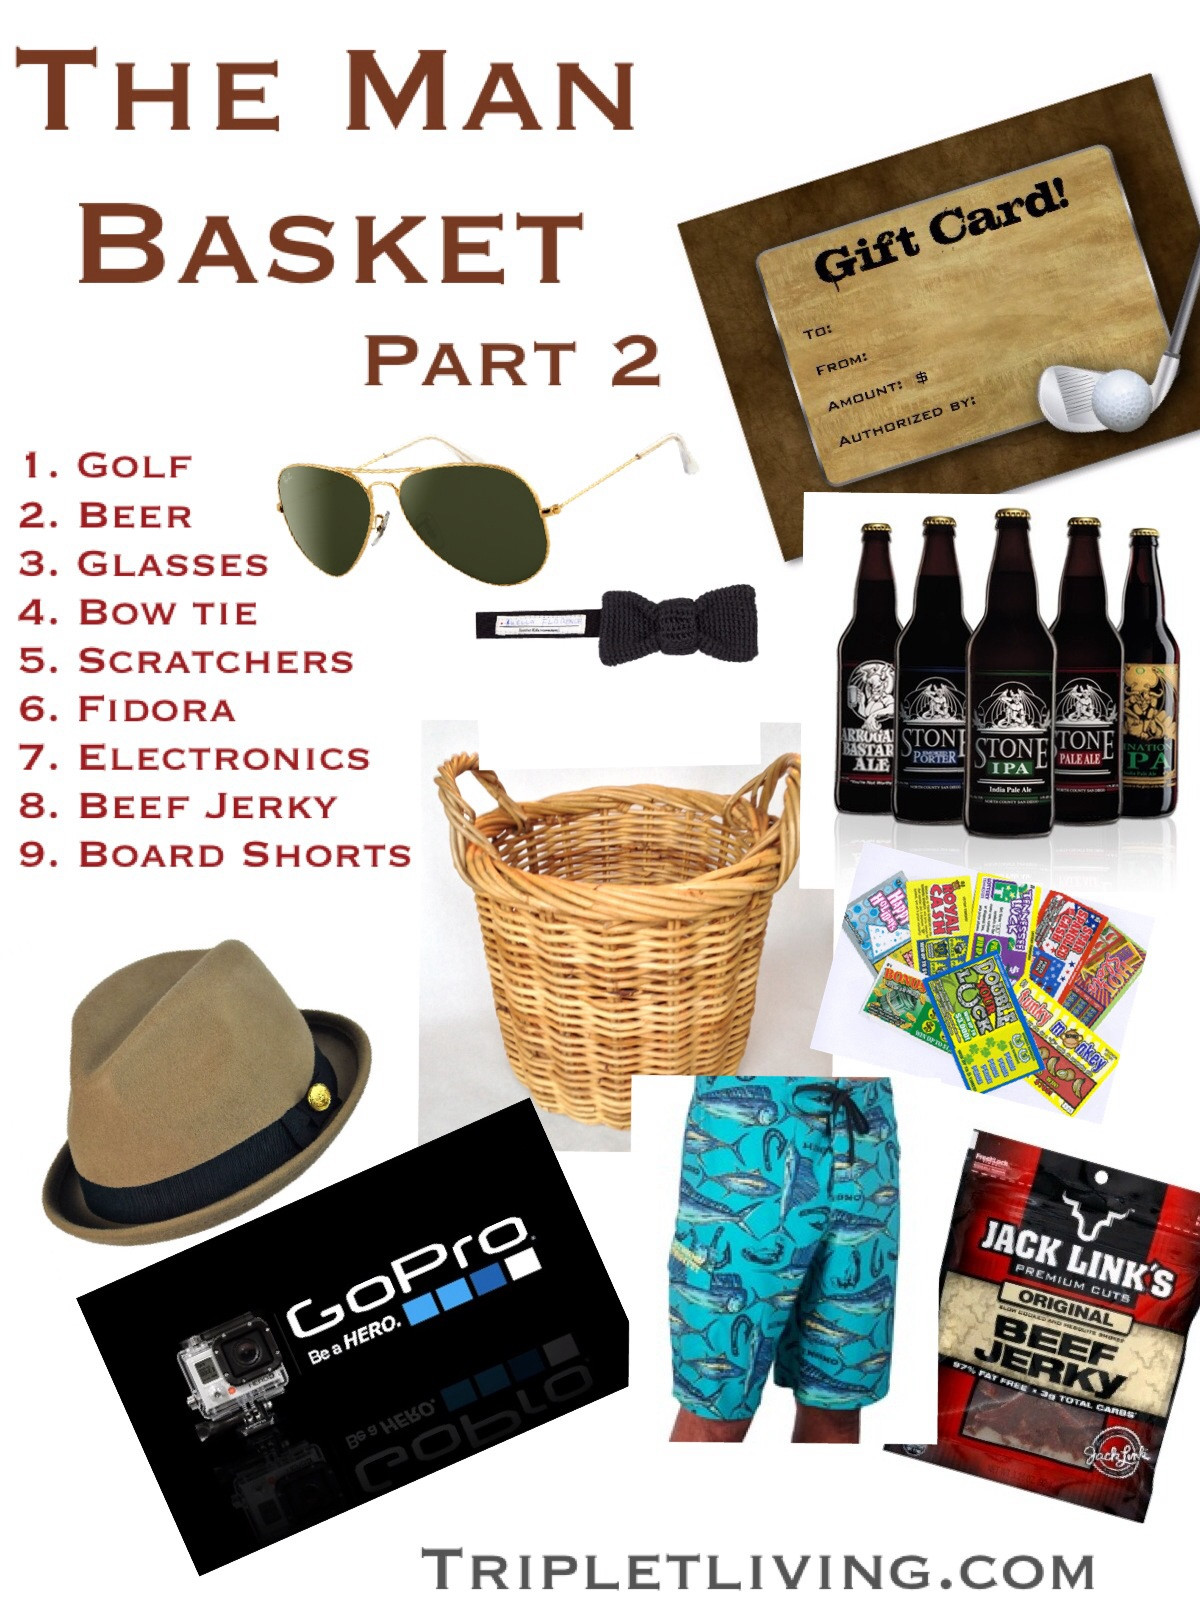 Easter Basket Ideas For Husband
 The Man Basket PartII